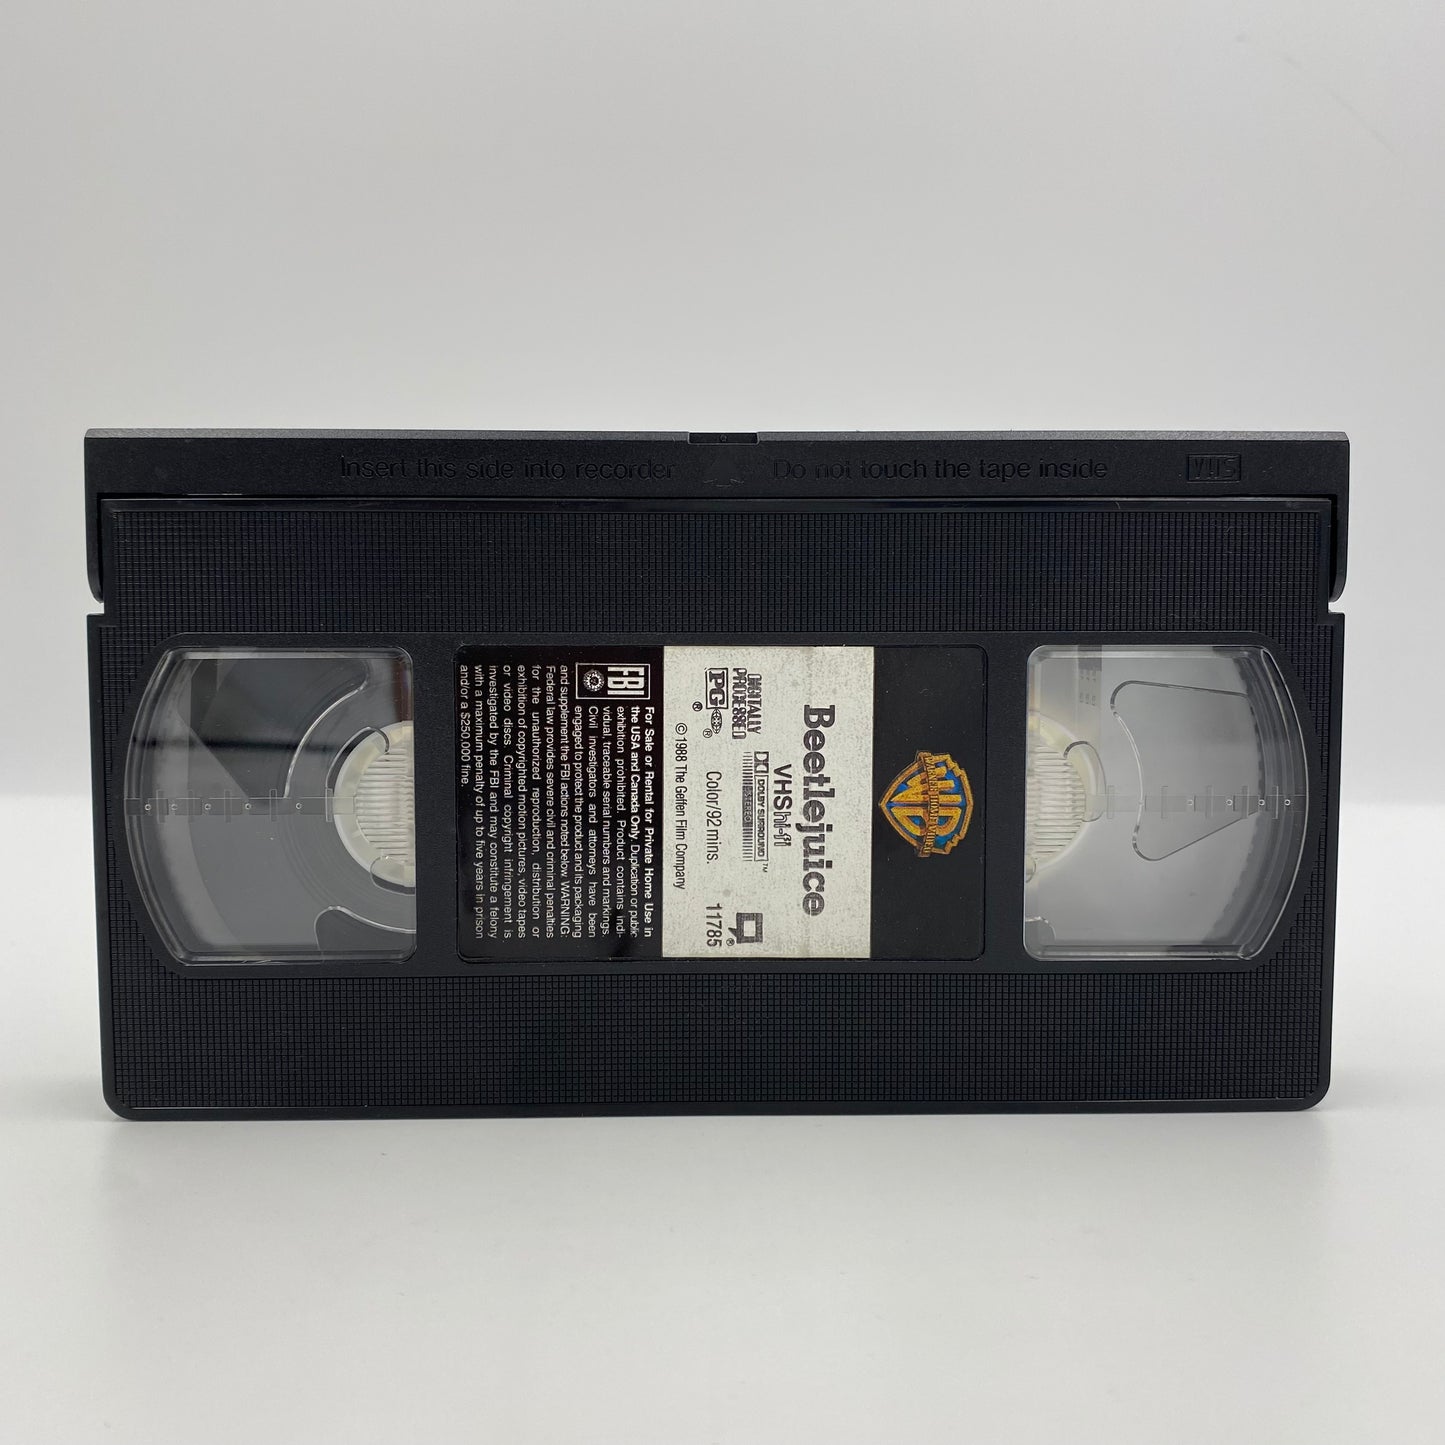 Beetlejuice VHS tape (1991) Warner Home Video